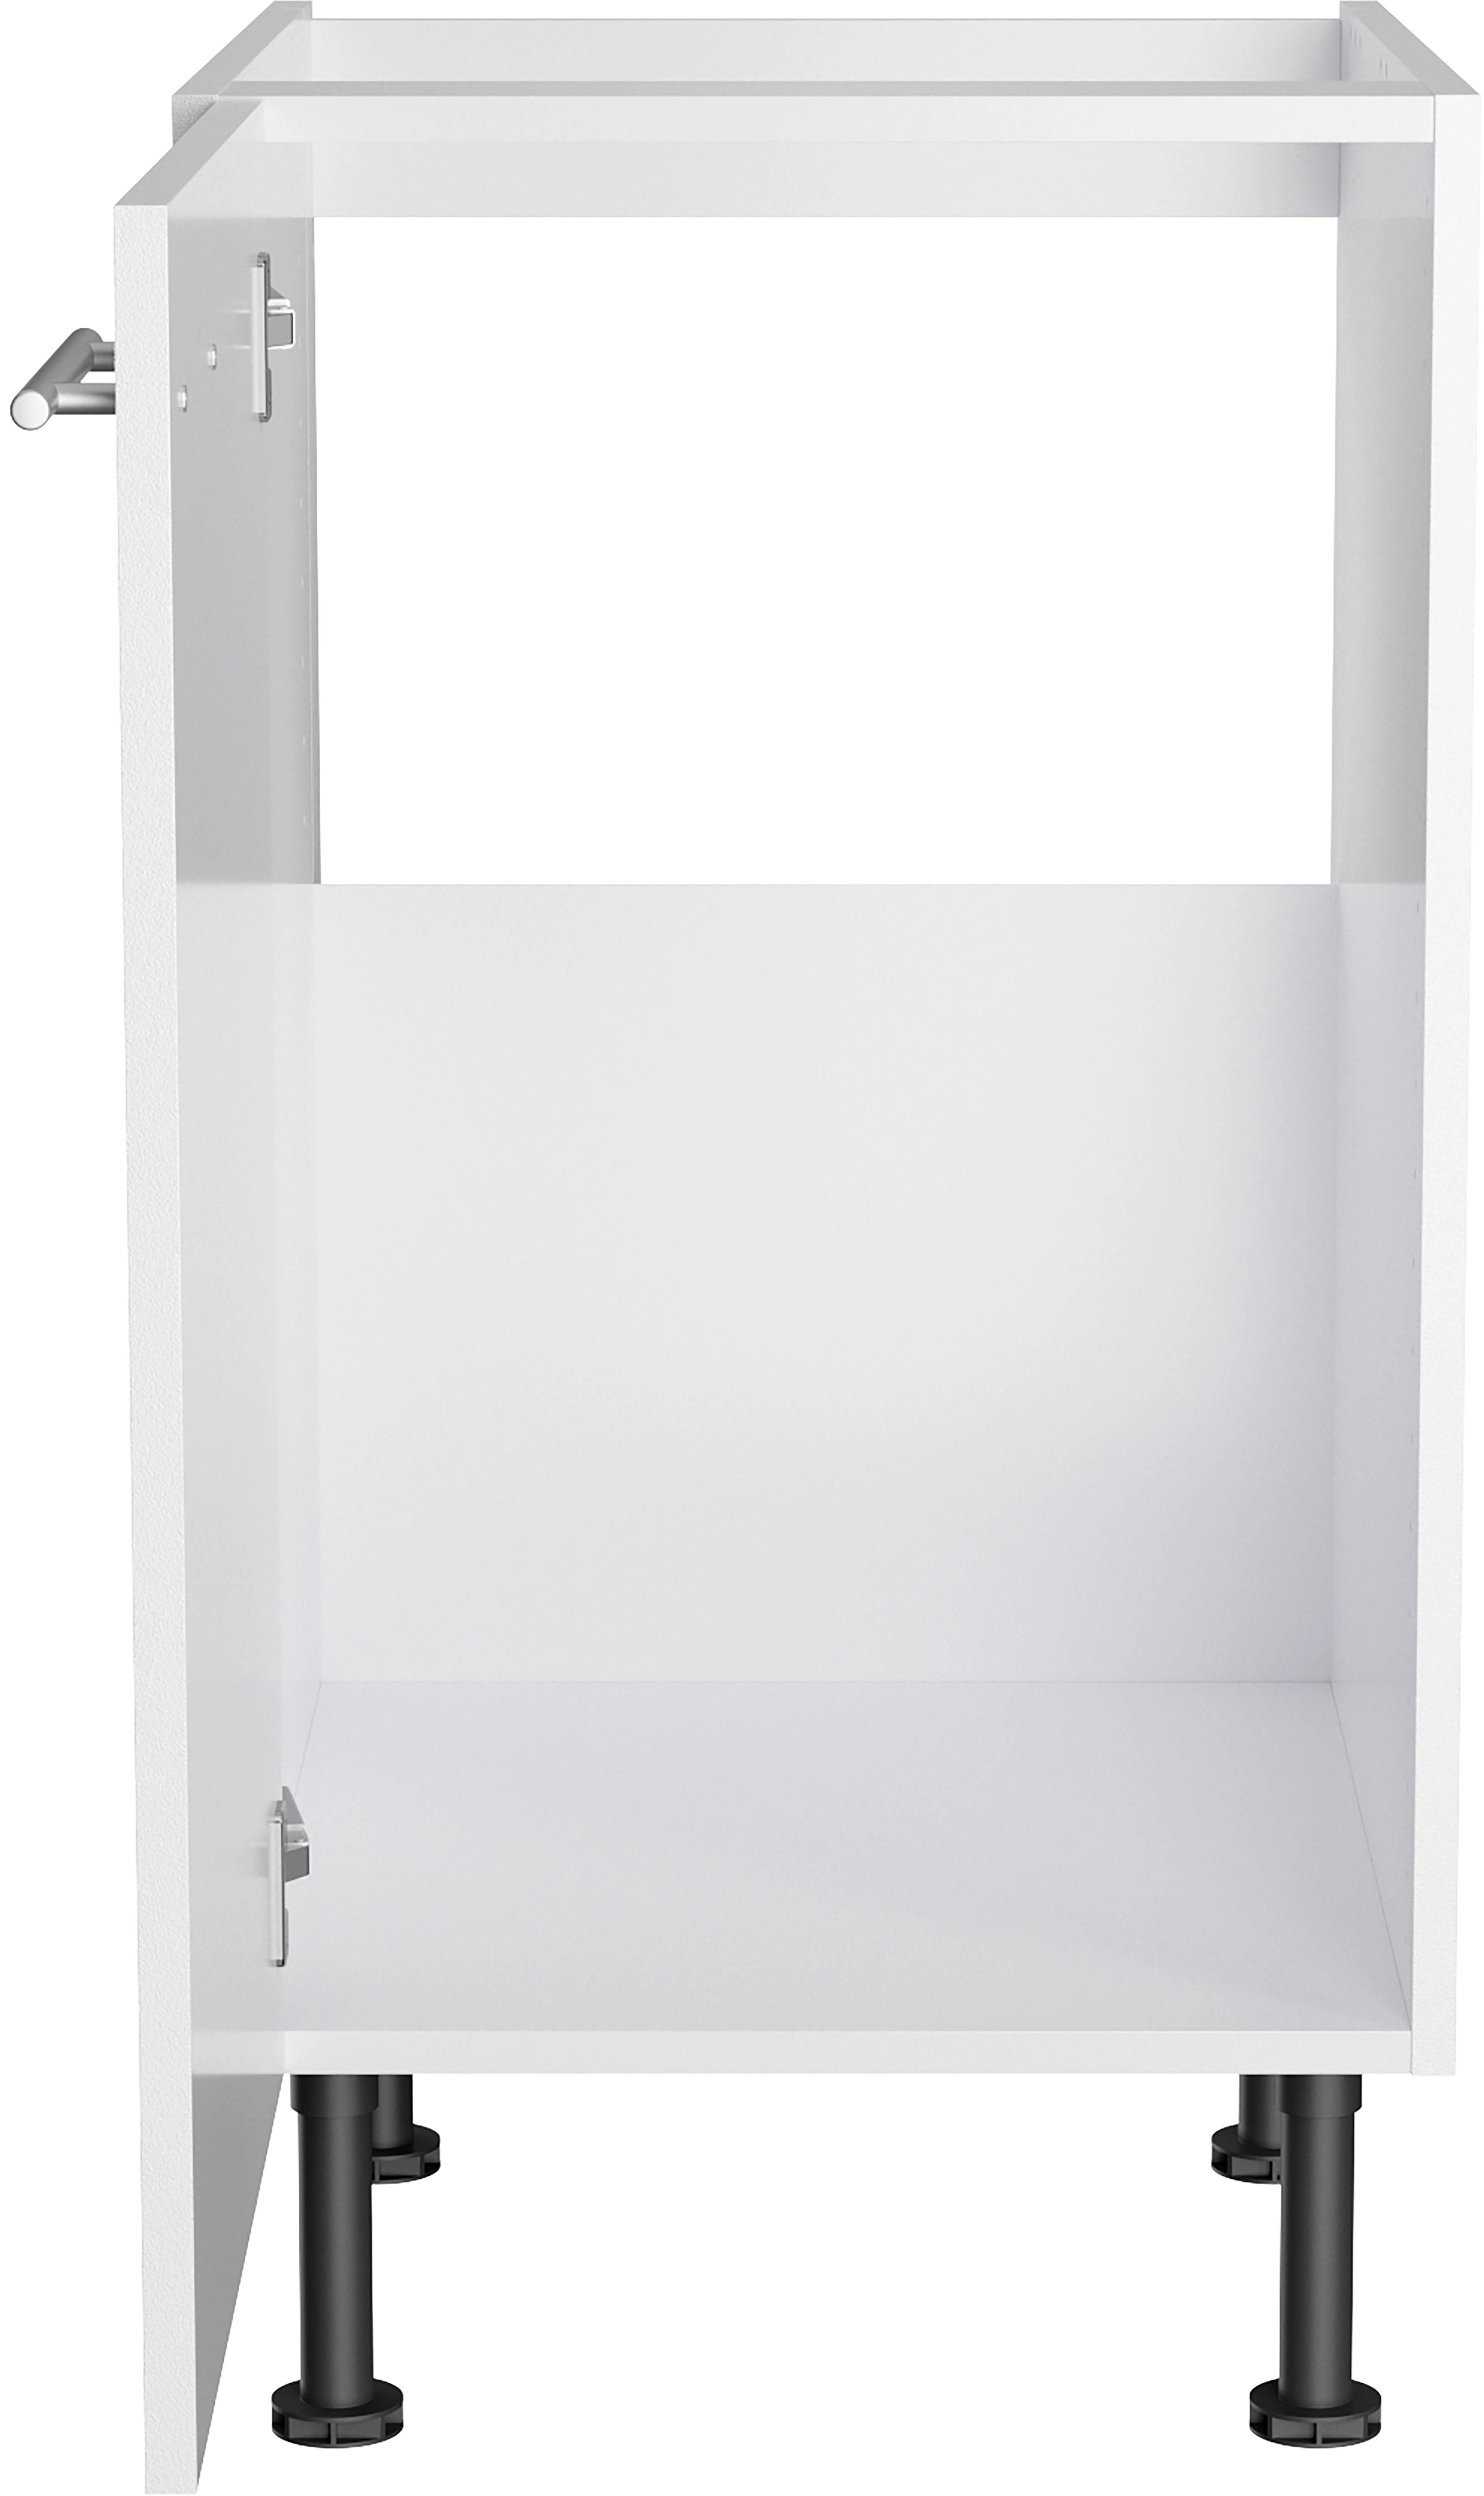 Optifit Spülenunterschrank Bengt932 45 cm x 87 cm x 58,4 cm Weiß kaufen bei  OBI